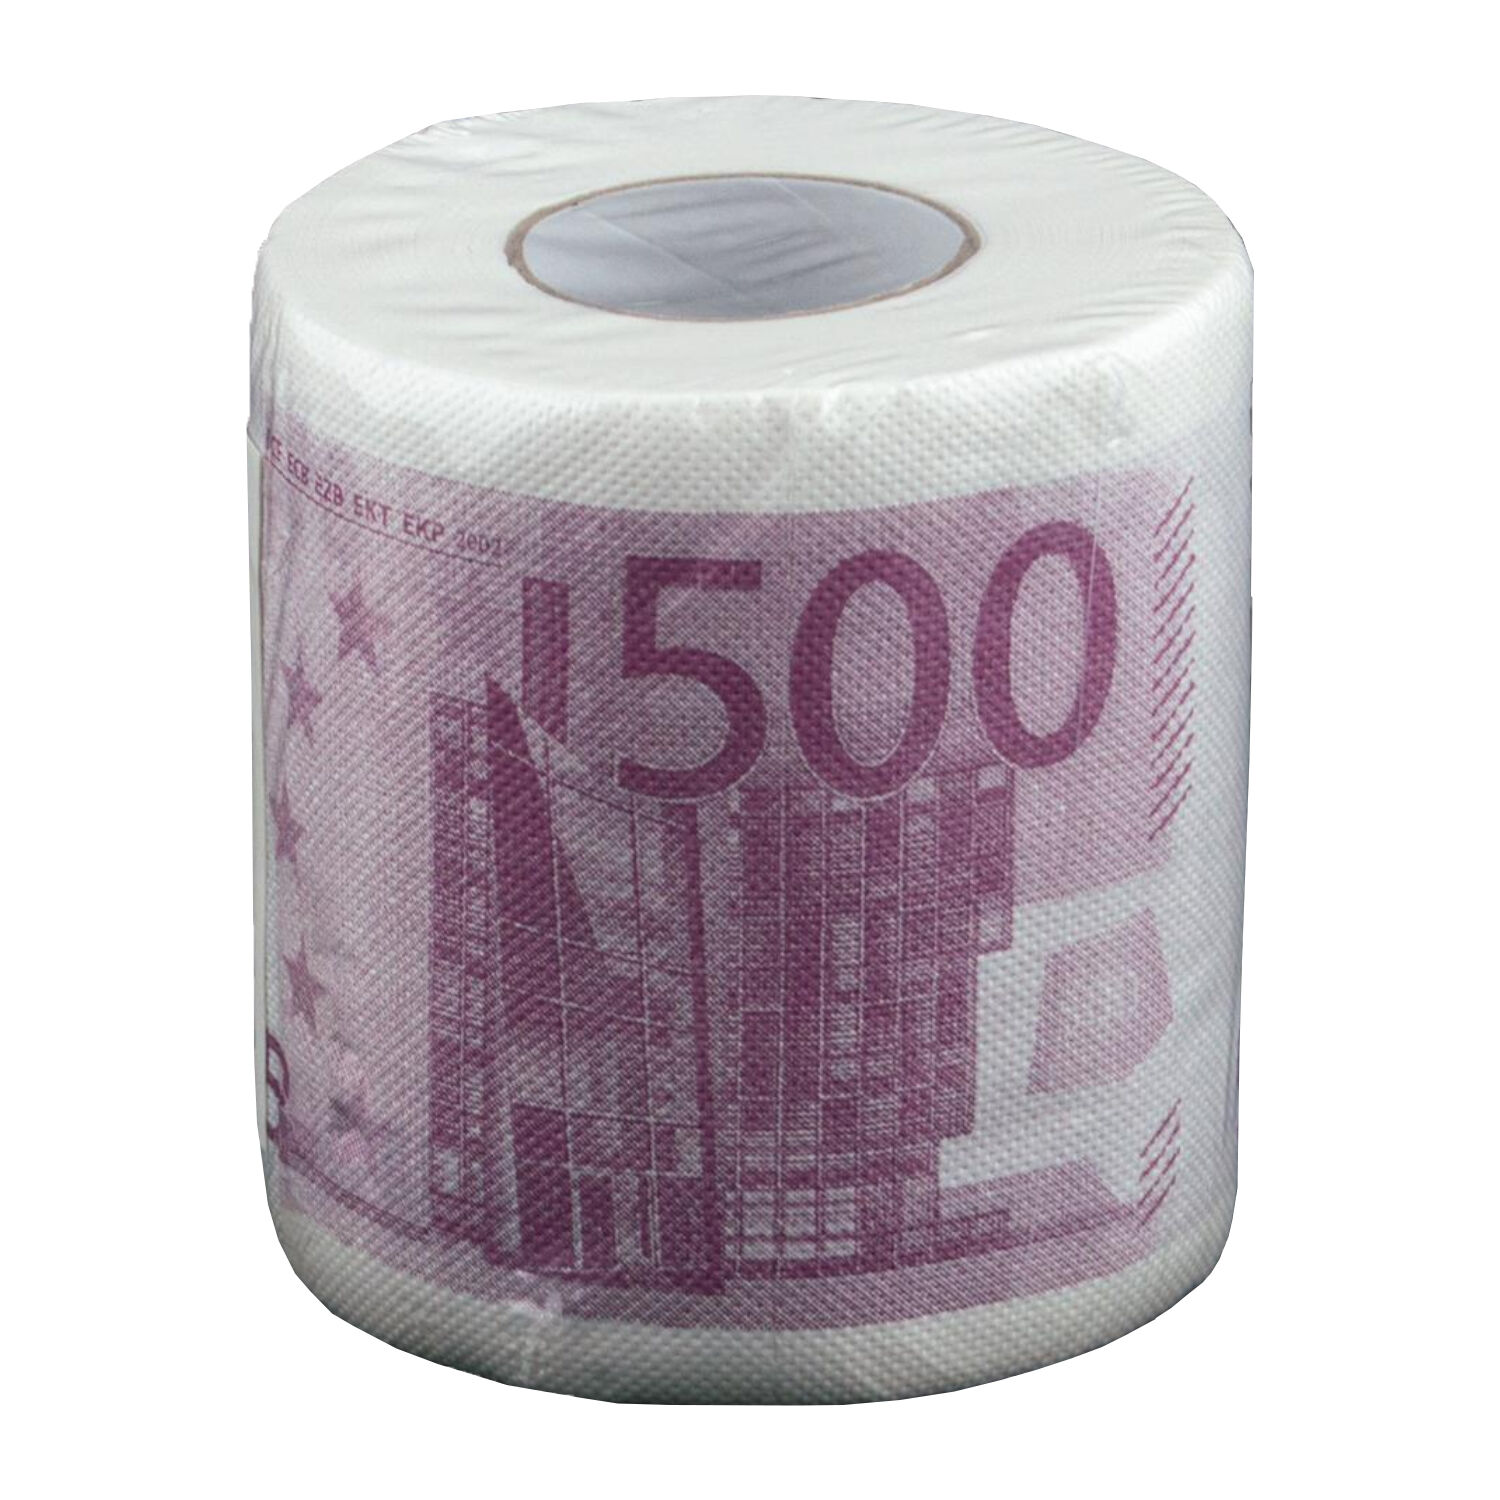 NEU Toilettenpapier Euroscheine, 1 Rolle